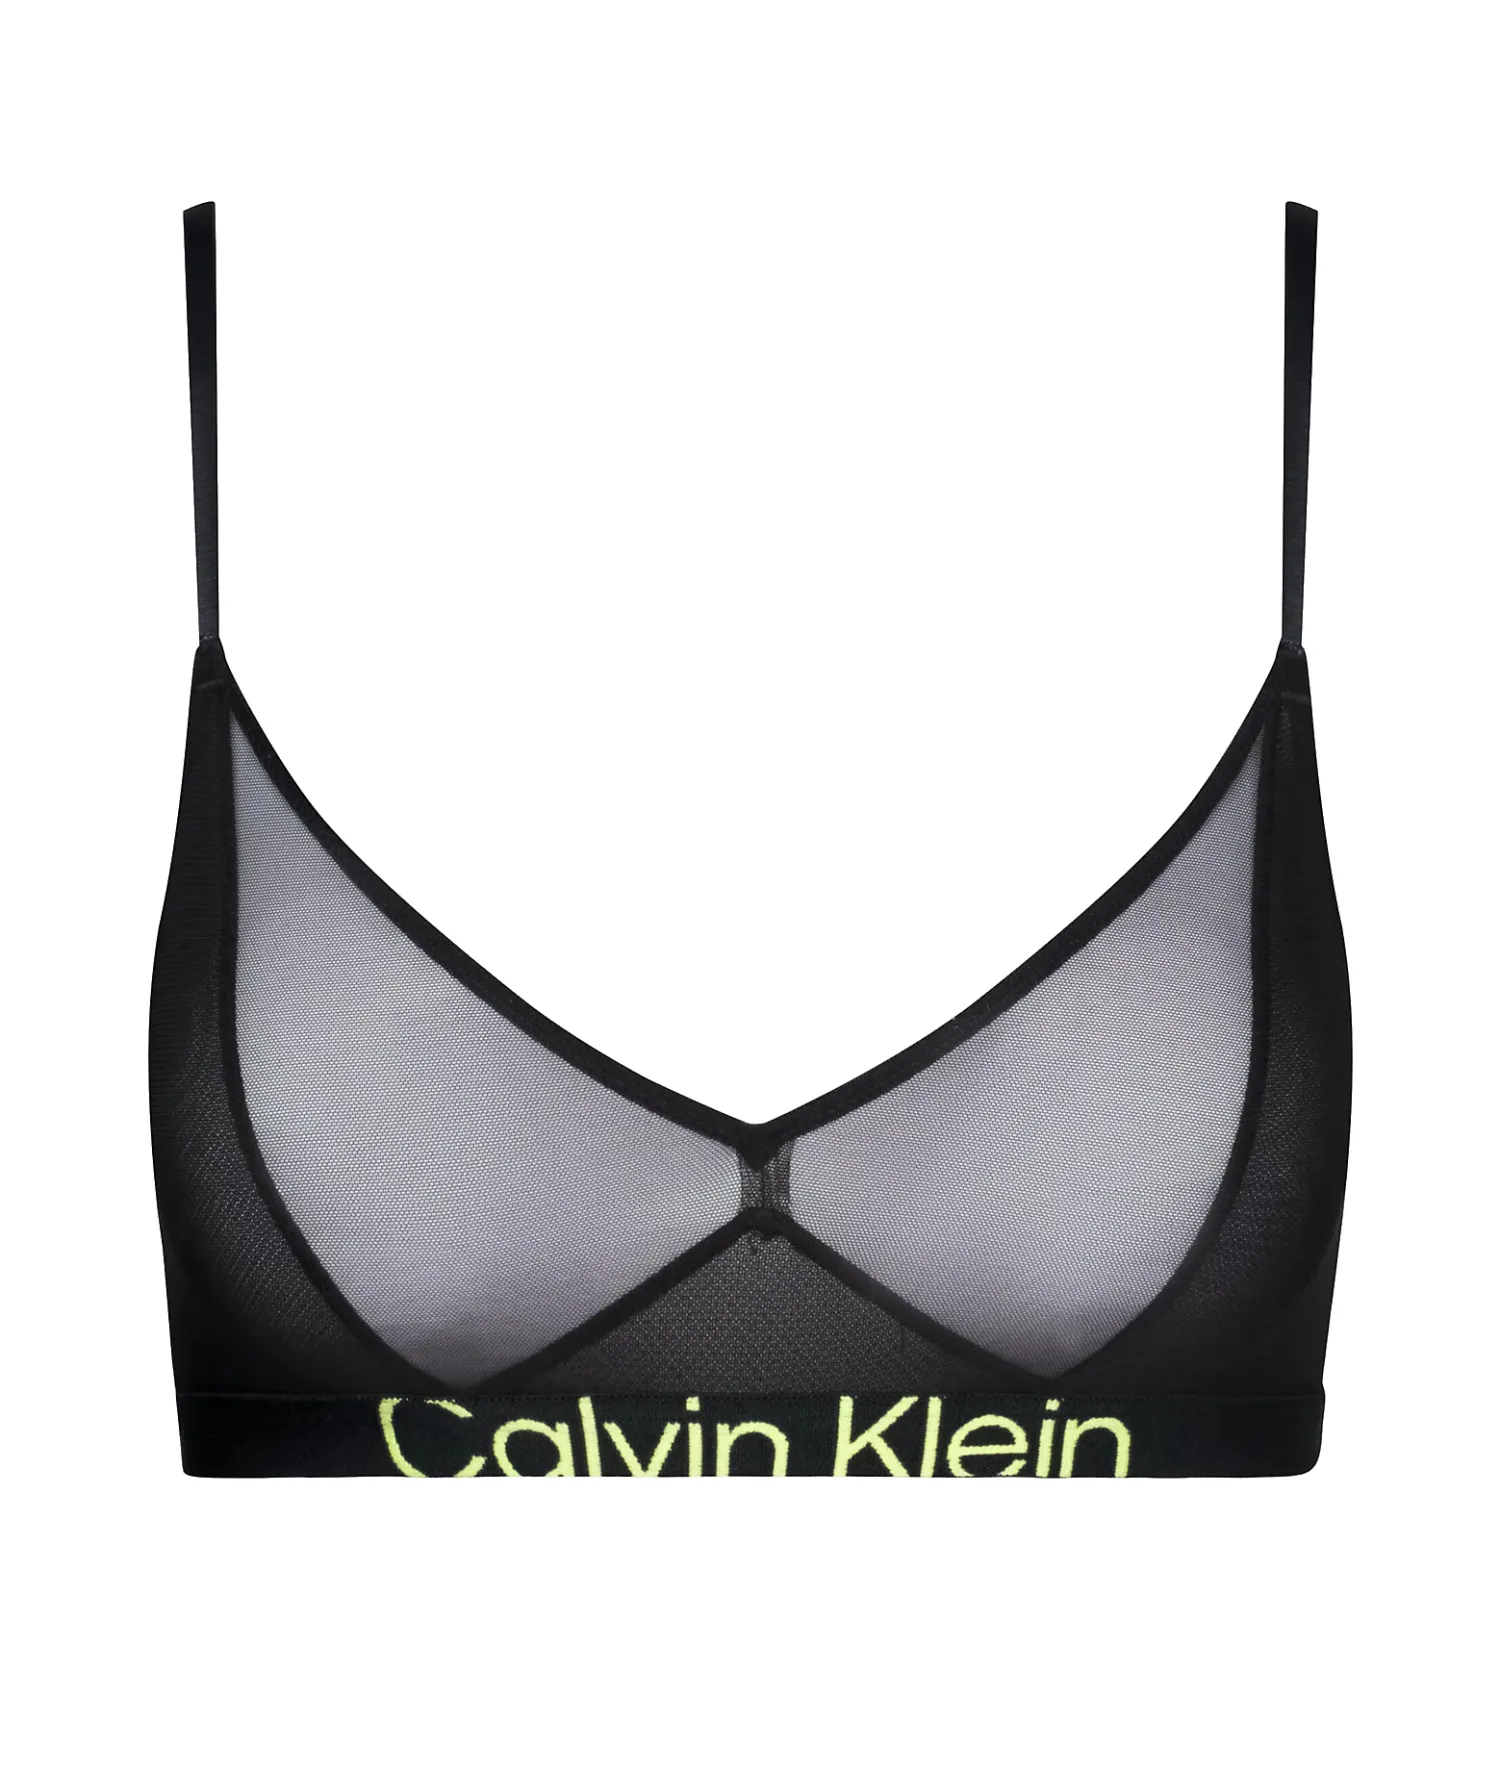 Calvin Klein Unlined Women's Bralette Black 000QF7233E - UB1